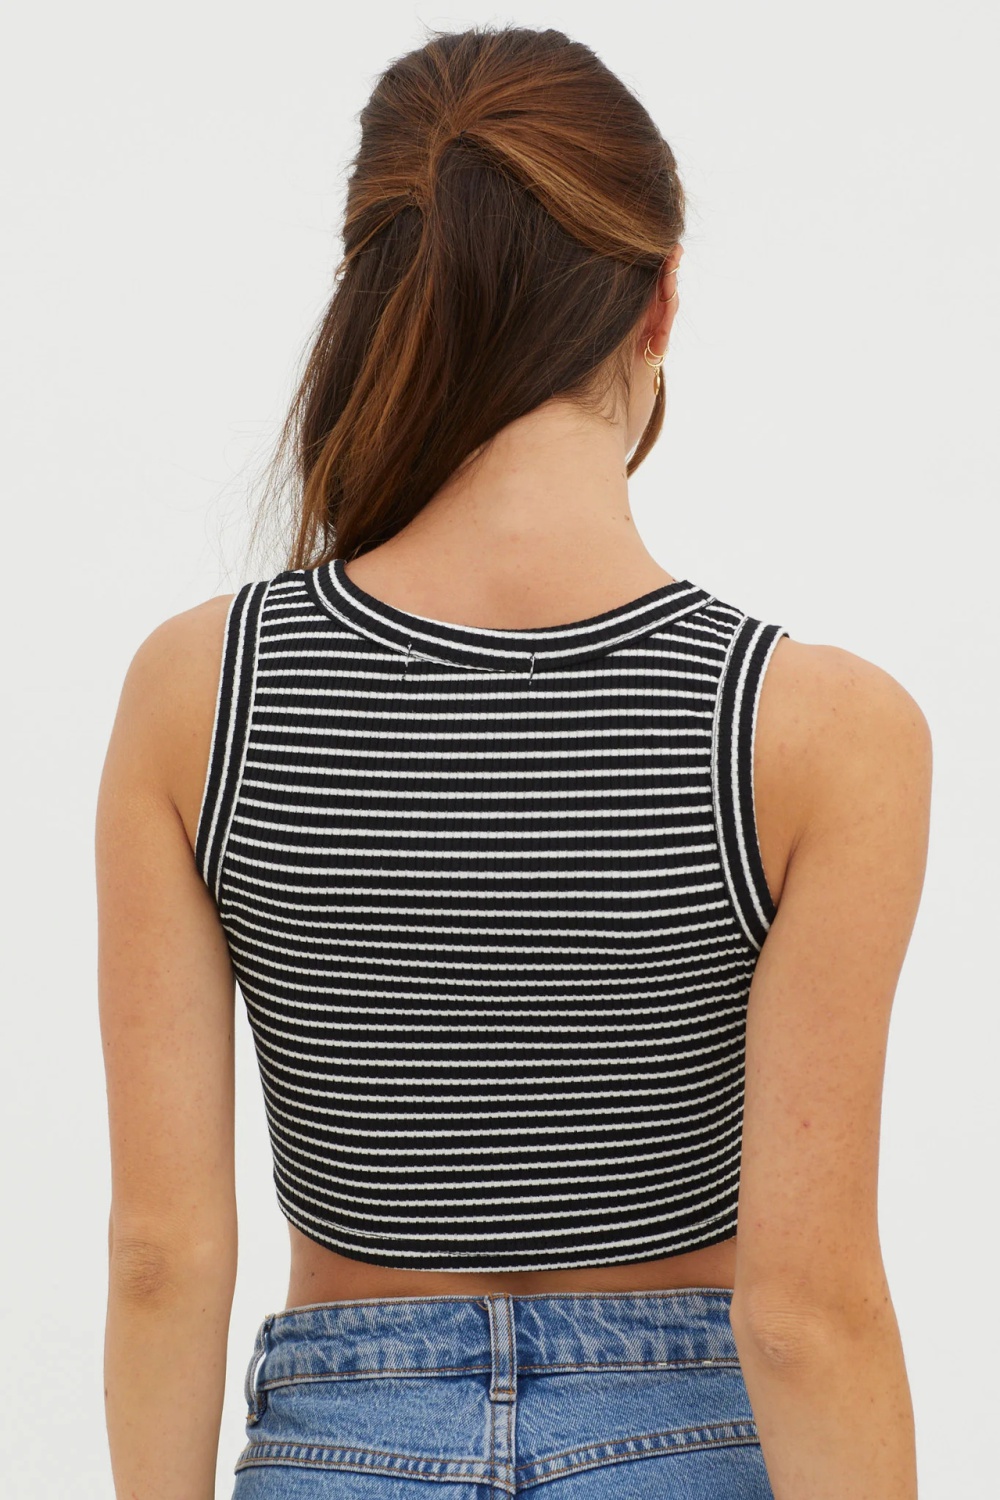 Sleeveless stripe summer tops short sexy vest for women